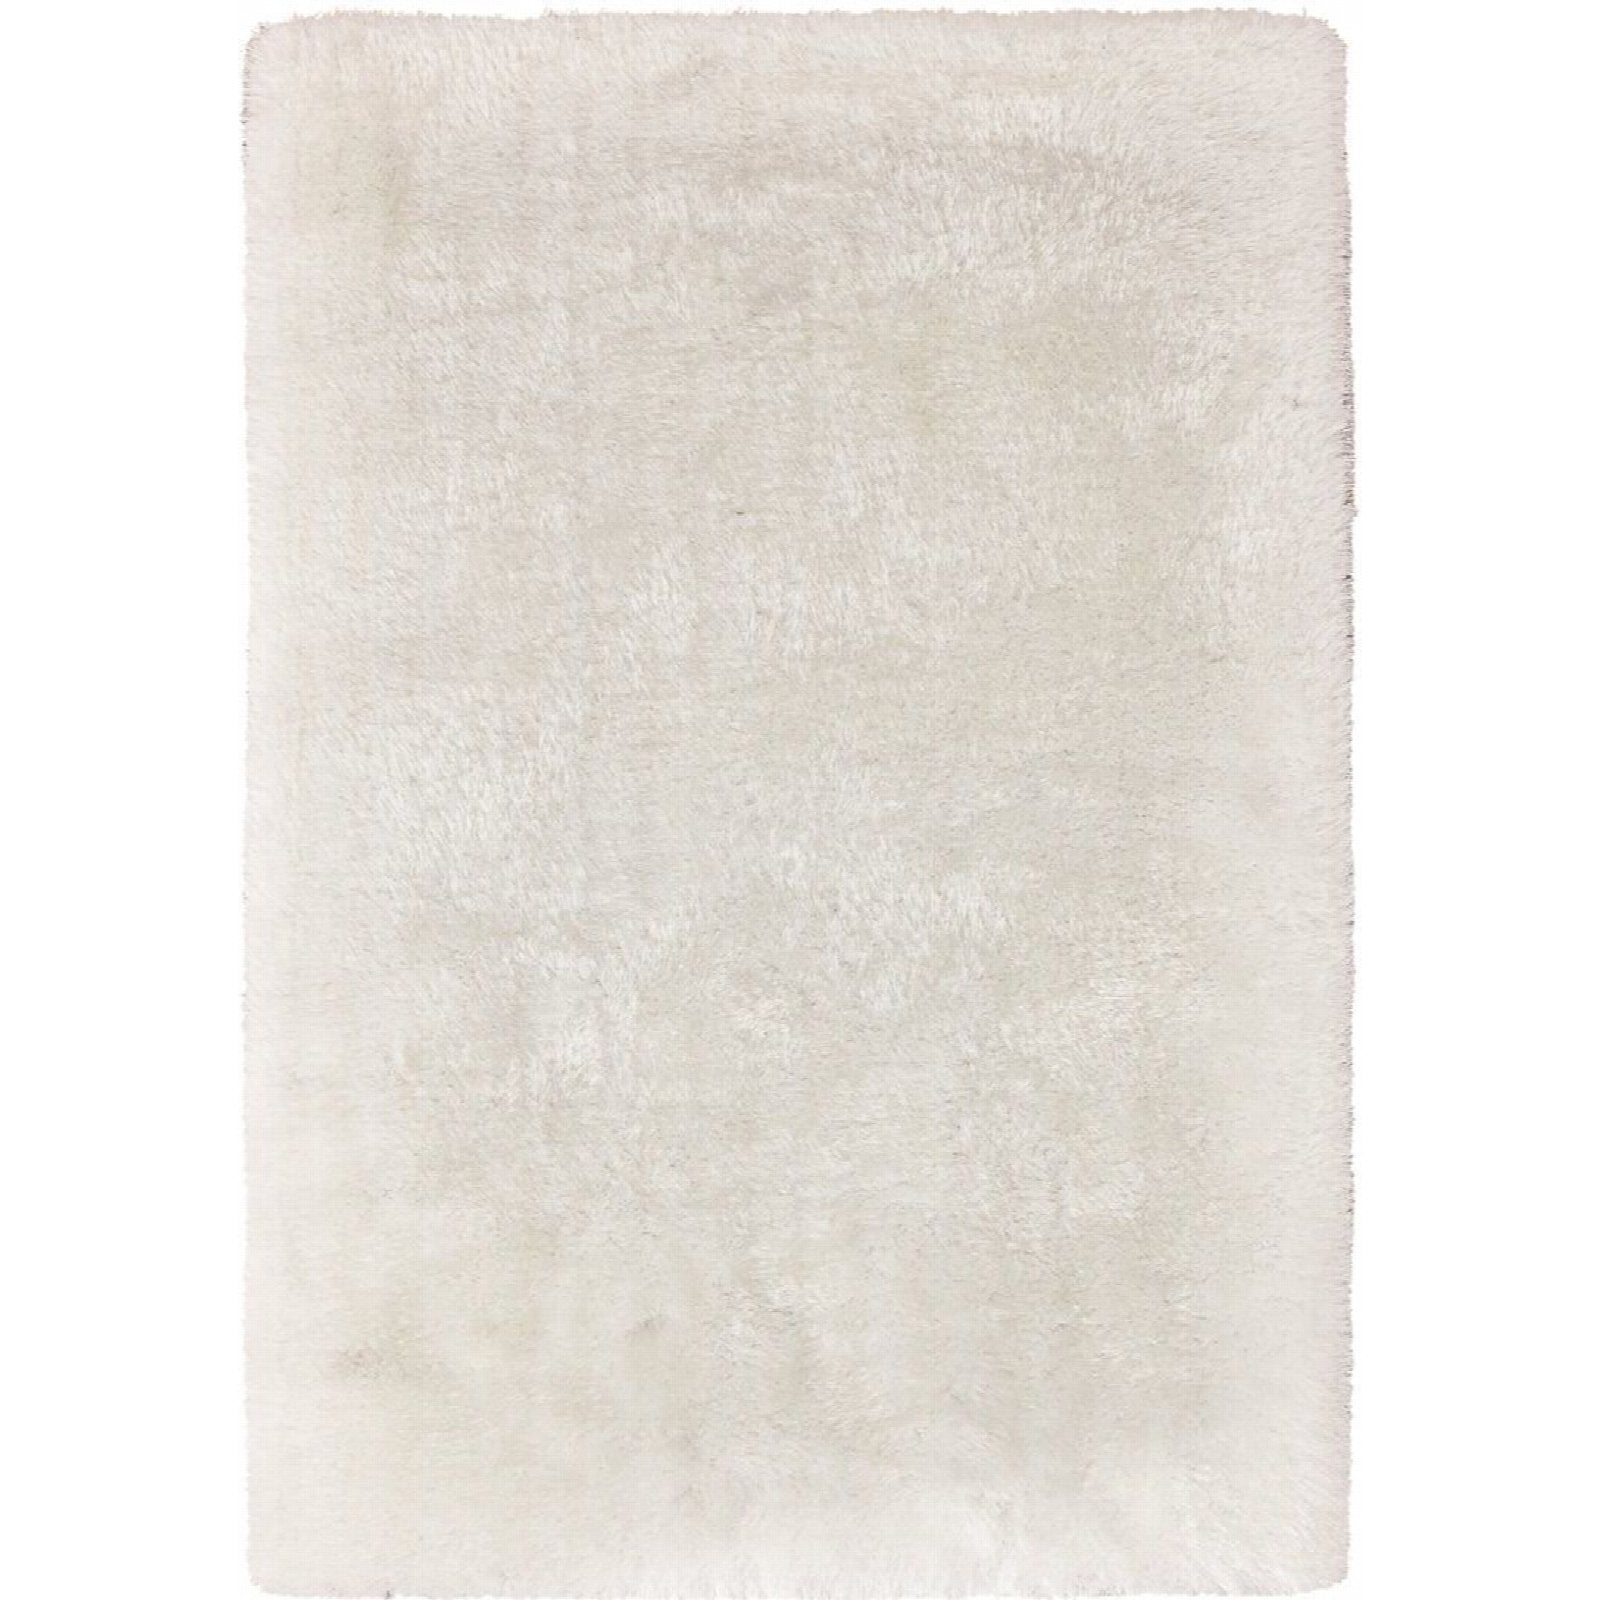 Tapis tufté à la main 310 cozy blanc - 120 x 170 cm | Leroy Merlin